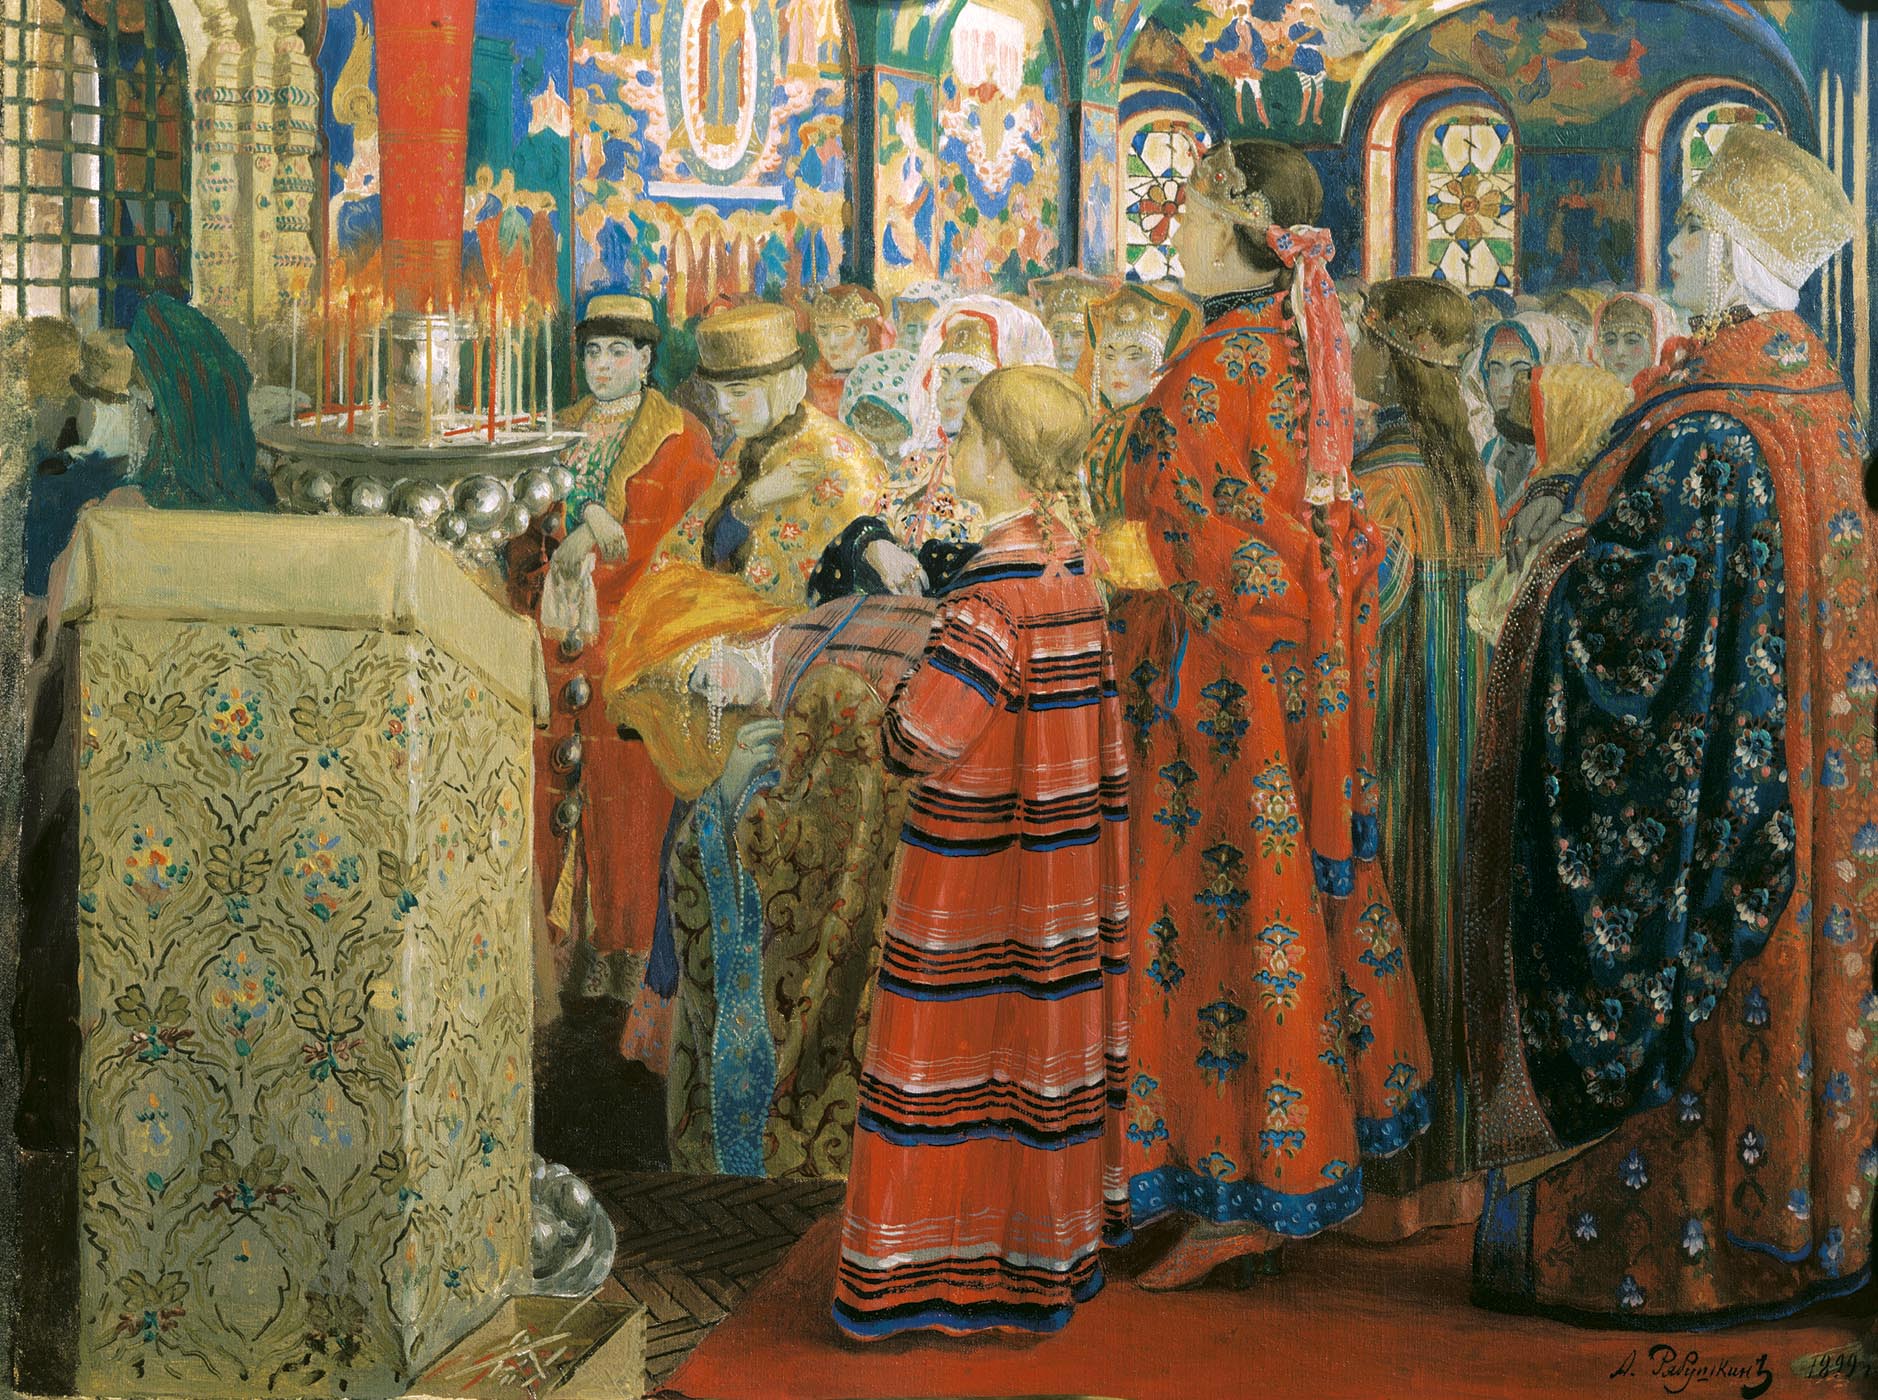 Рябушкин. Русские женщины XVII столетия в церкви. 1899